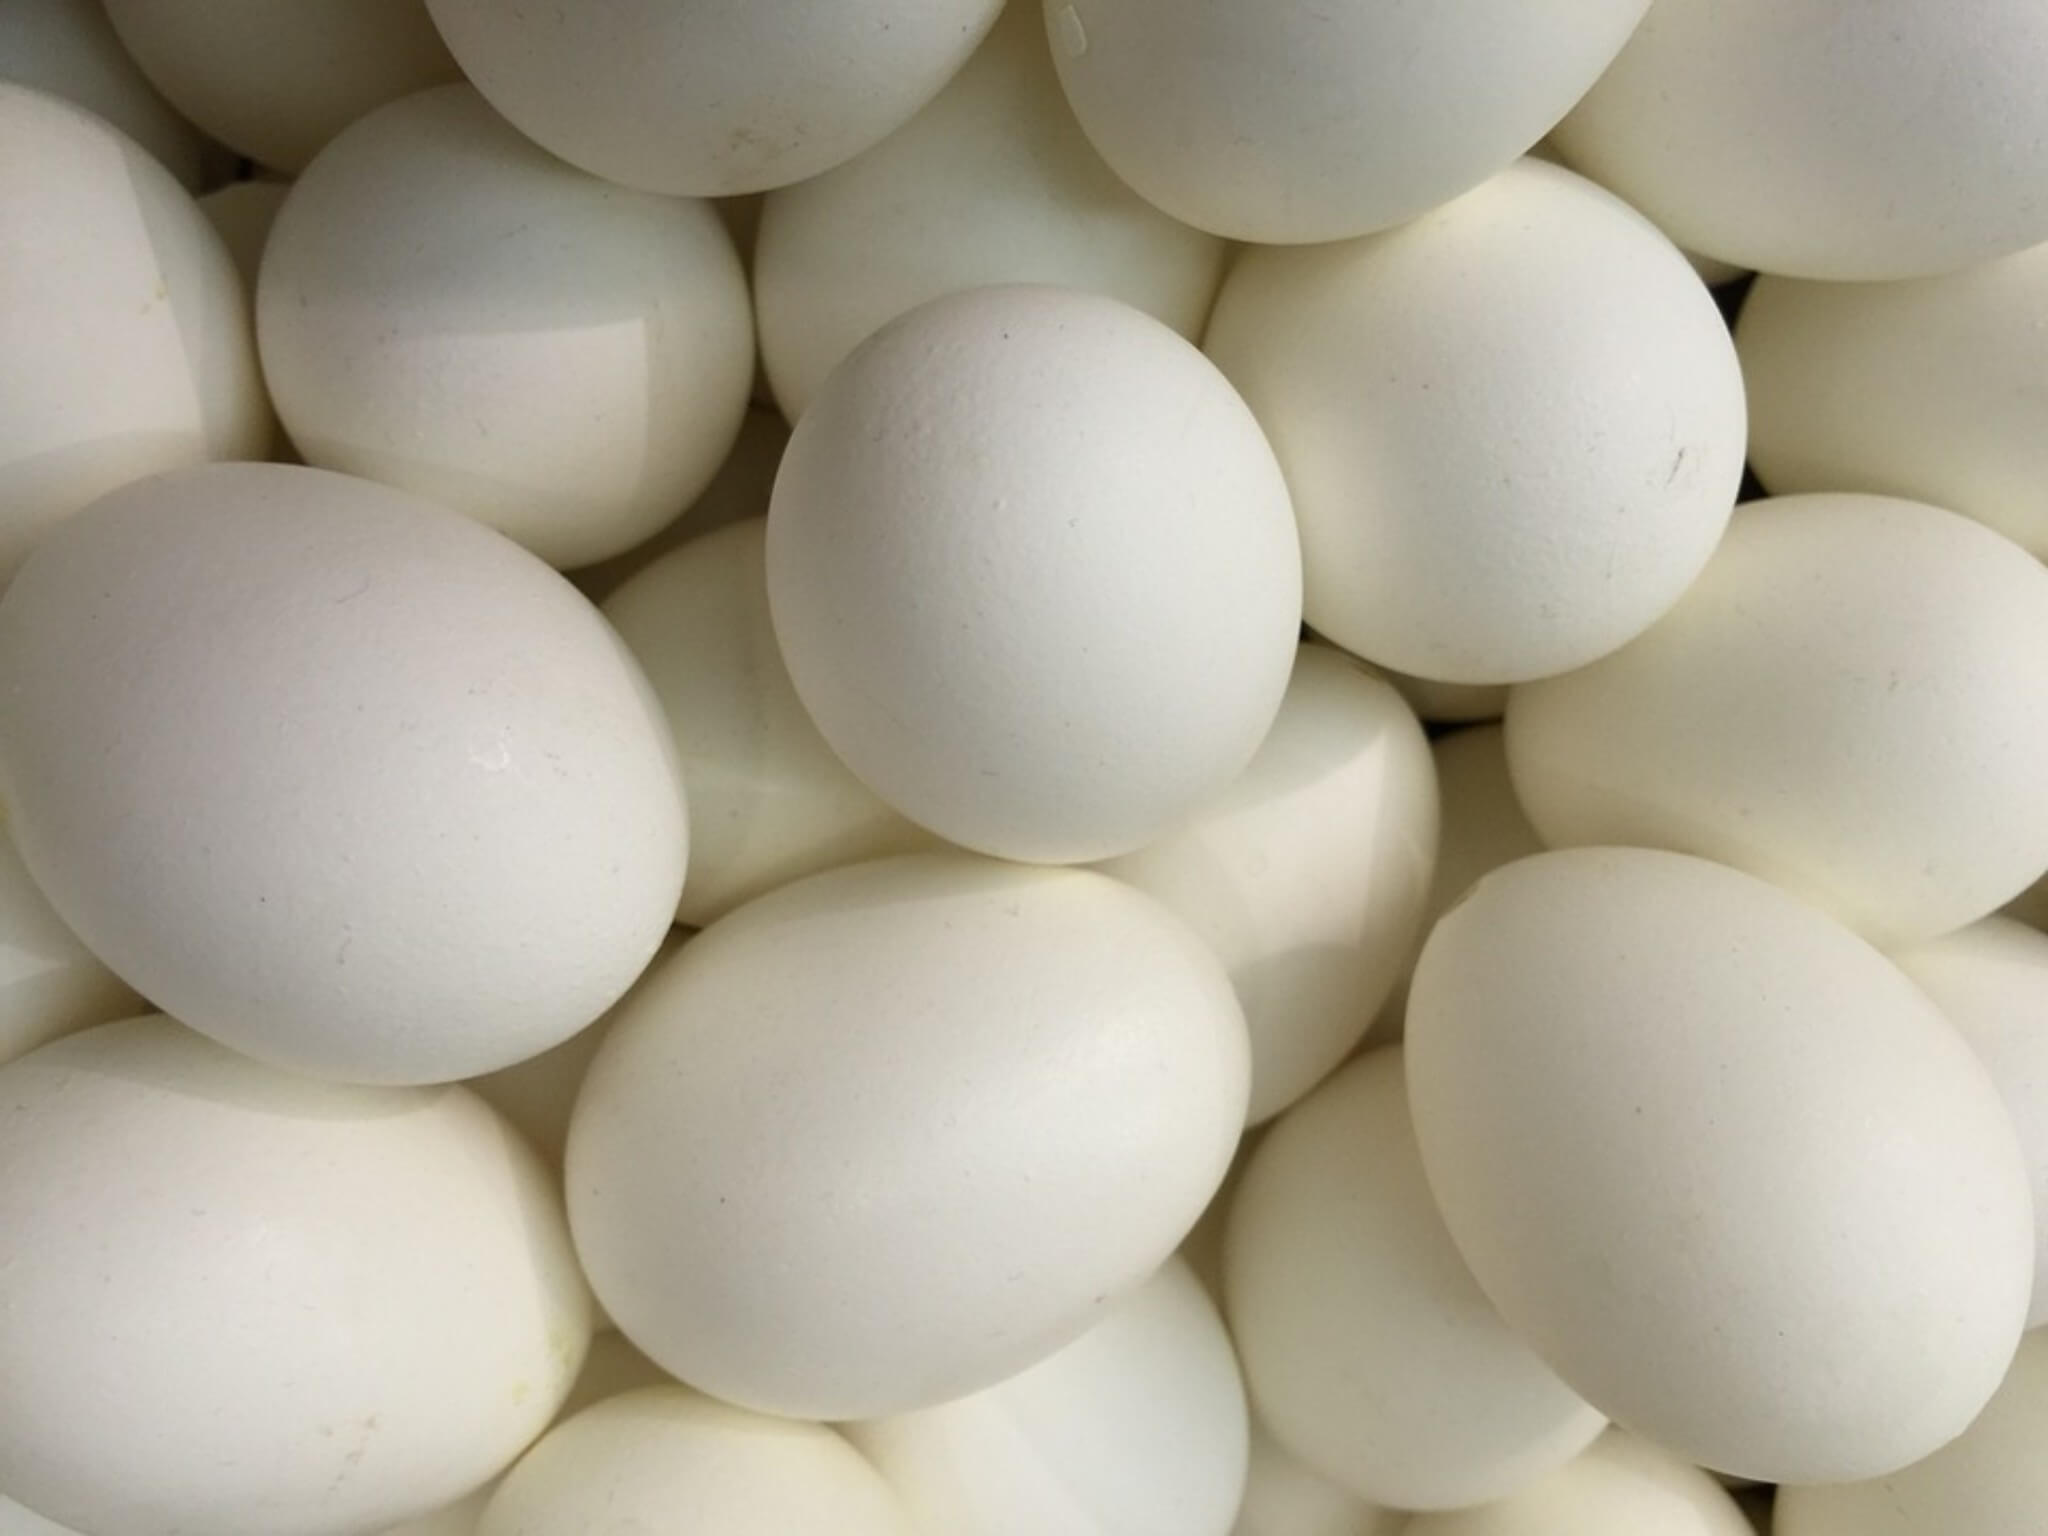 uova fanno male falso mito